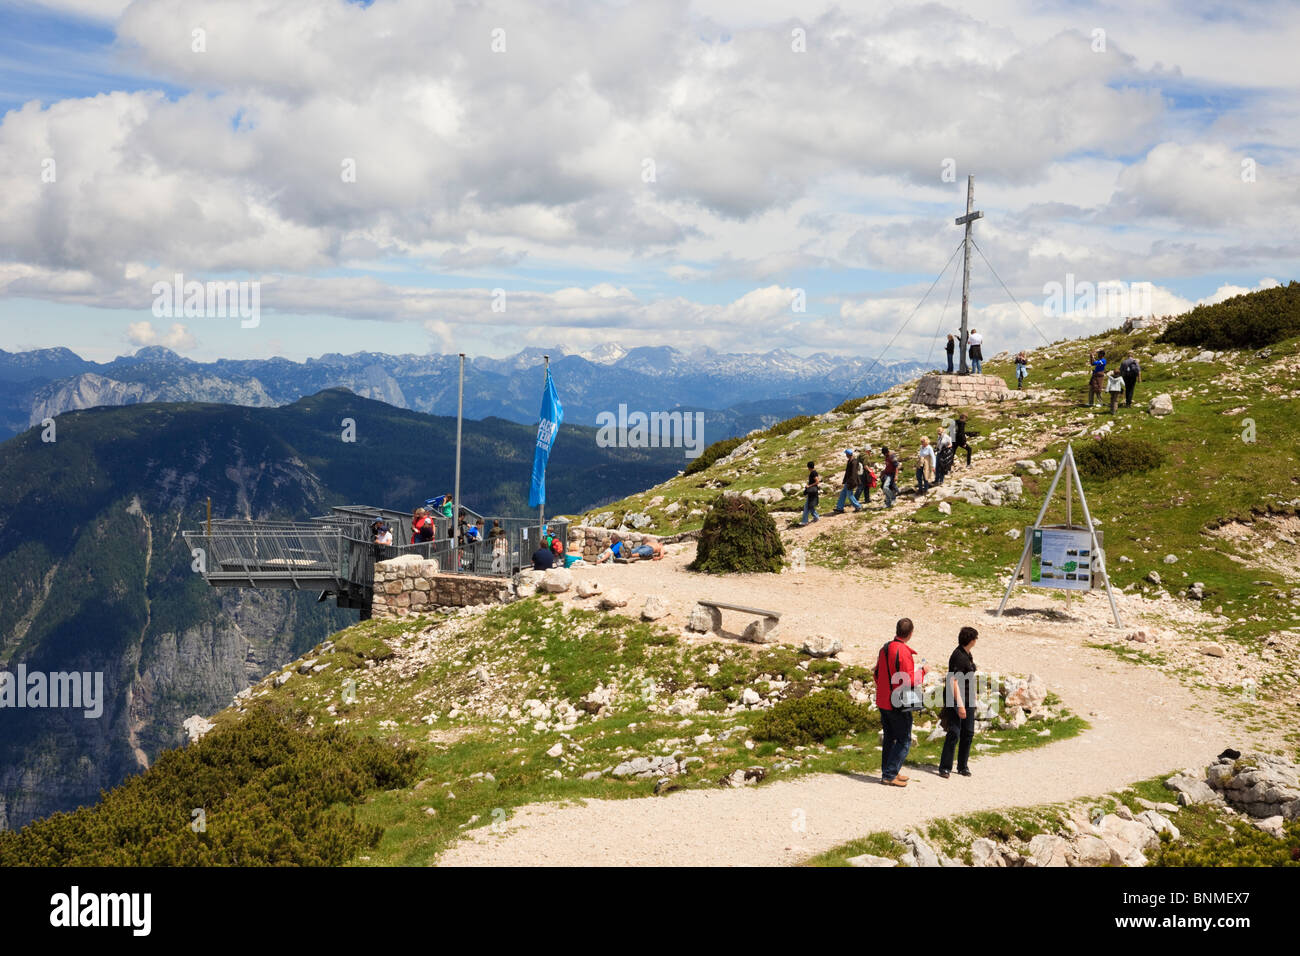 Les gens qui marchent sur le chemin à 5 doigts plate-forme d'observation sur la montagne Krippenstein dans le massif du Dachstein dans Alpes. L'Autriche, Europe Banque D'Images